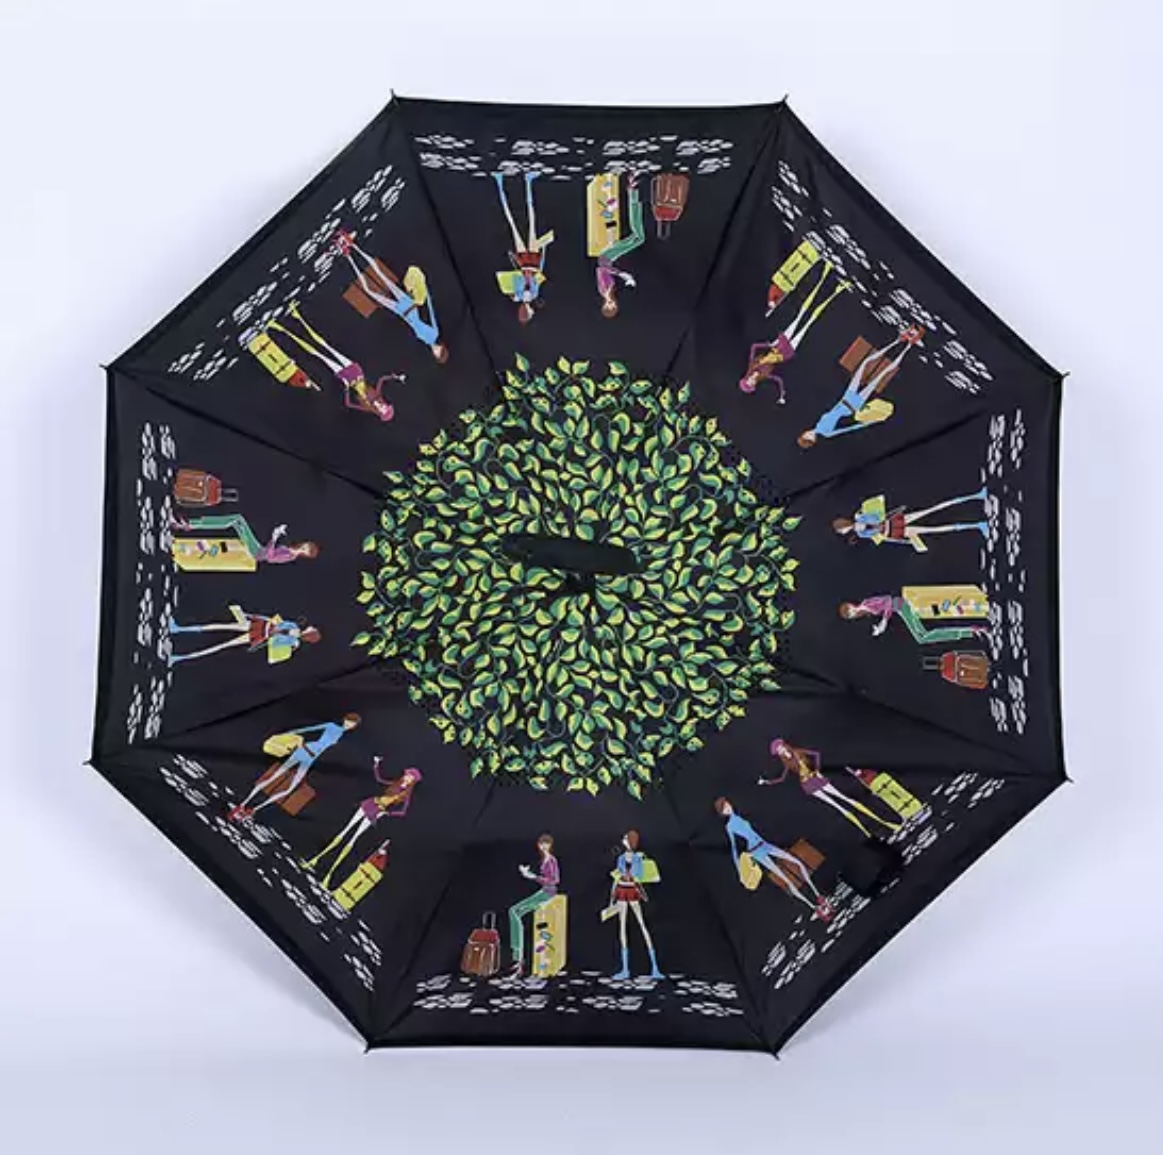 parapluie inversé imprimé personnages